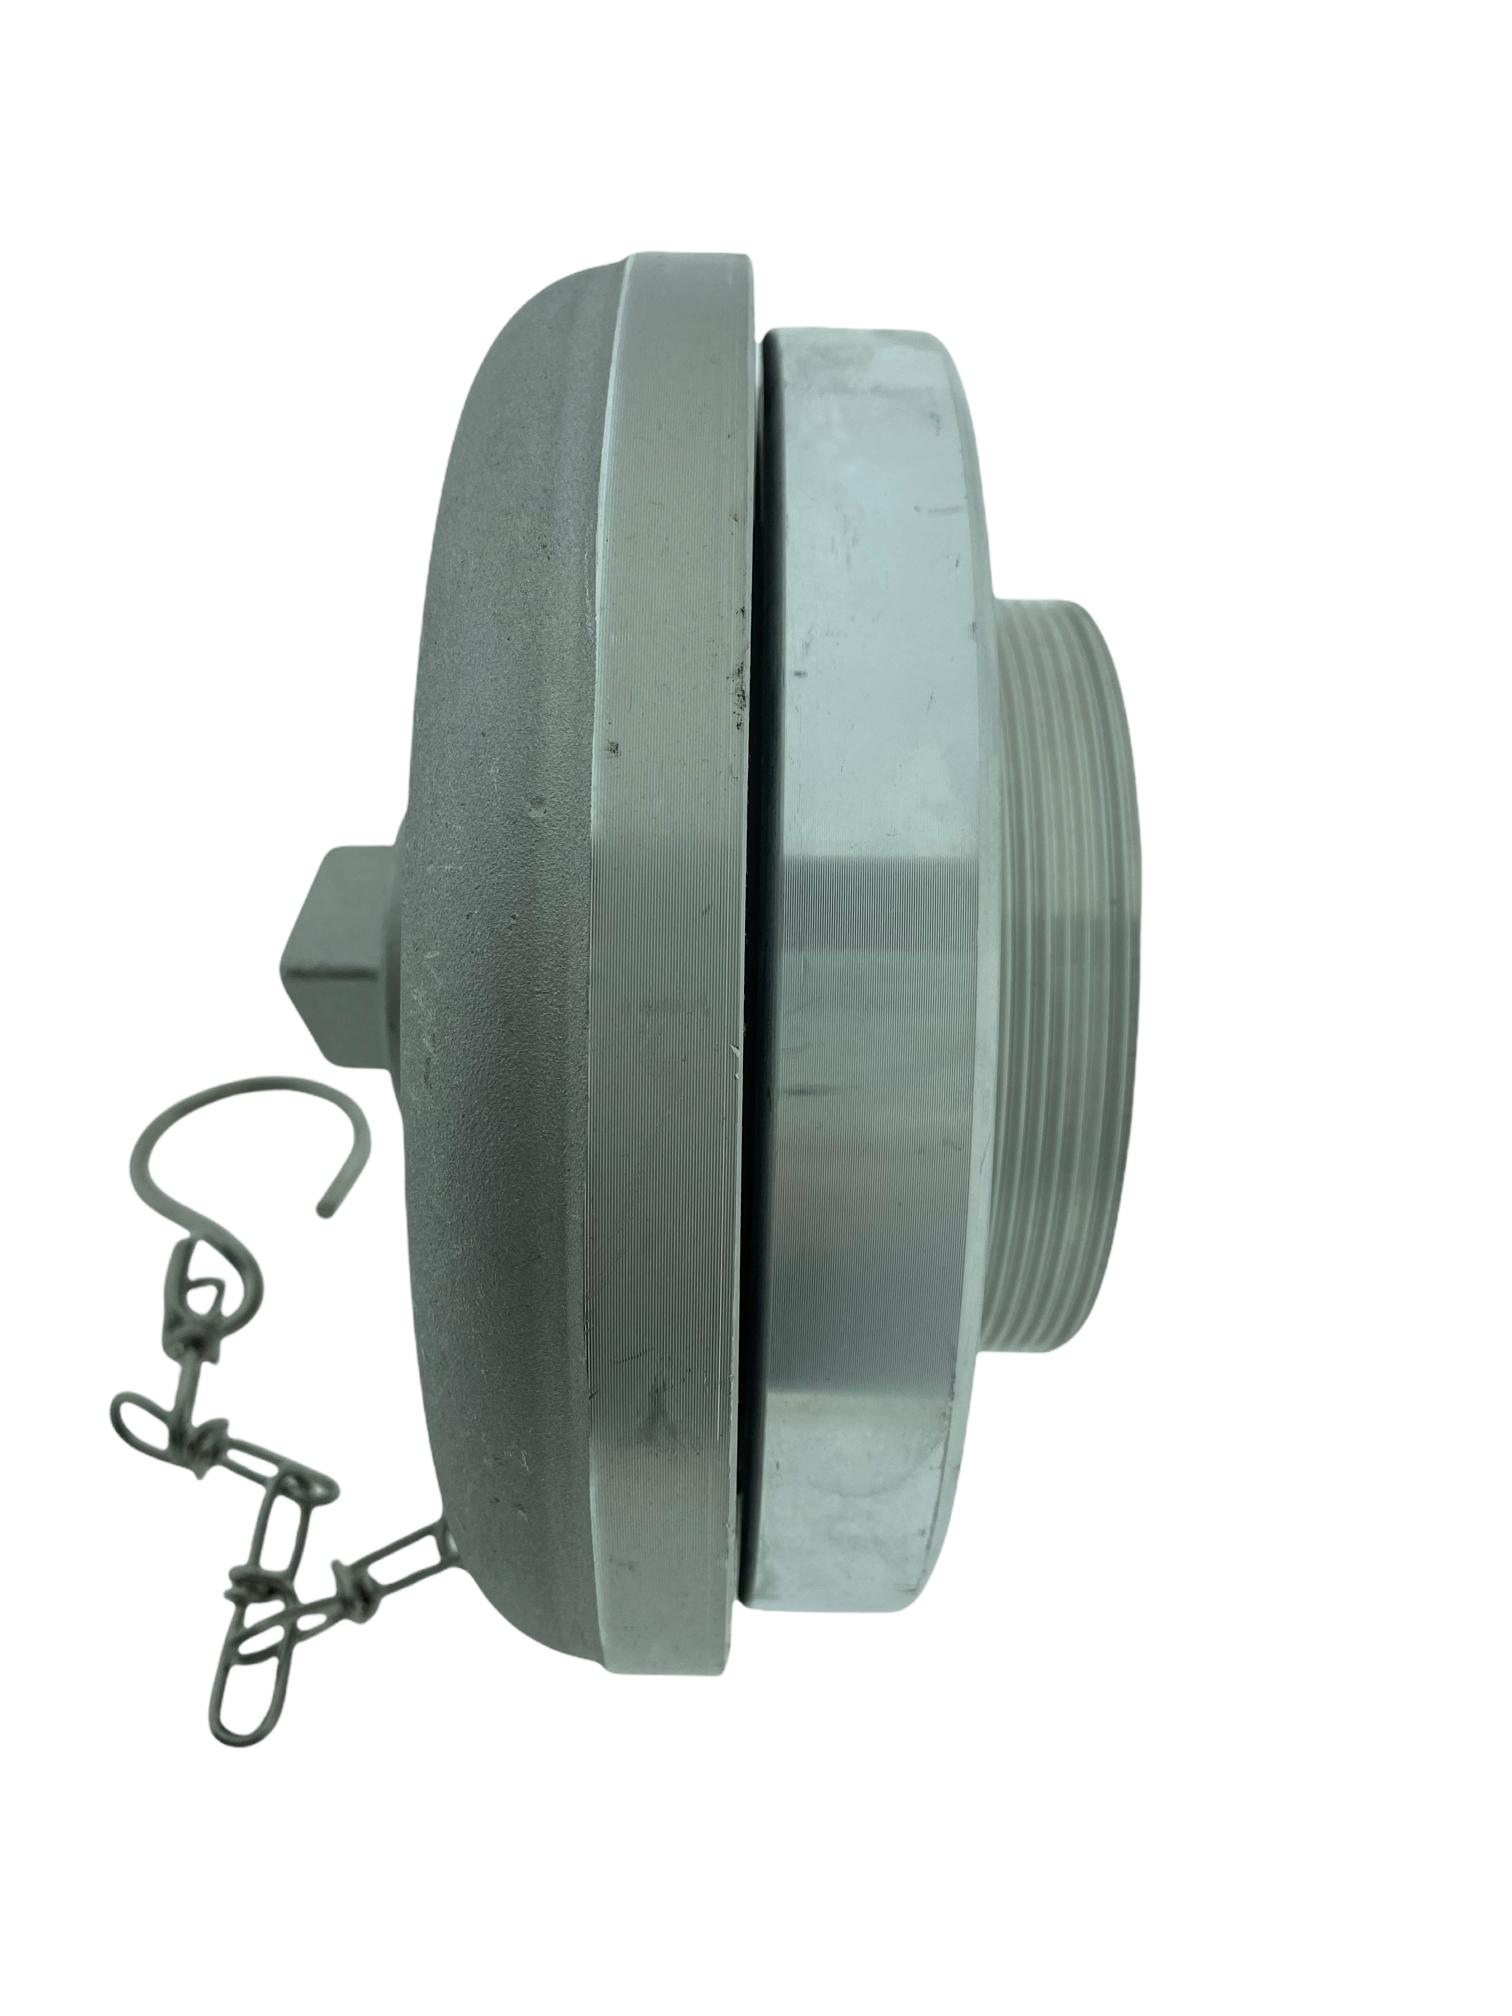 Storz Deckkapsel C LM DIN14317 mit Dreikant Blindkupplung Abdeckung Hydrant 